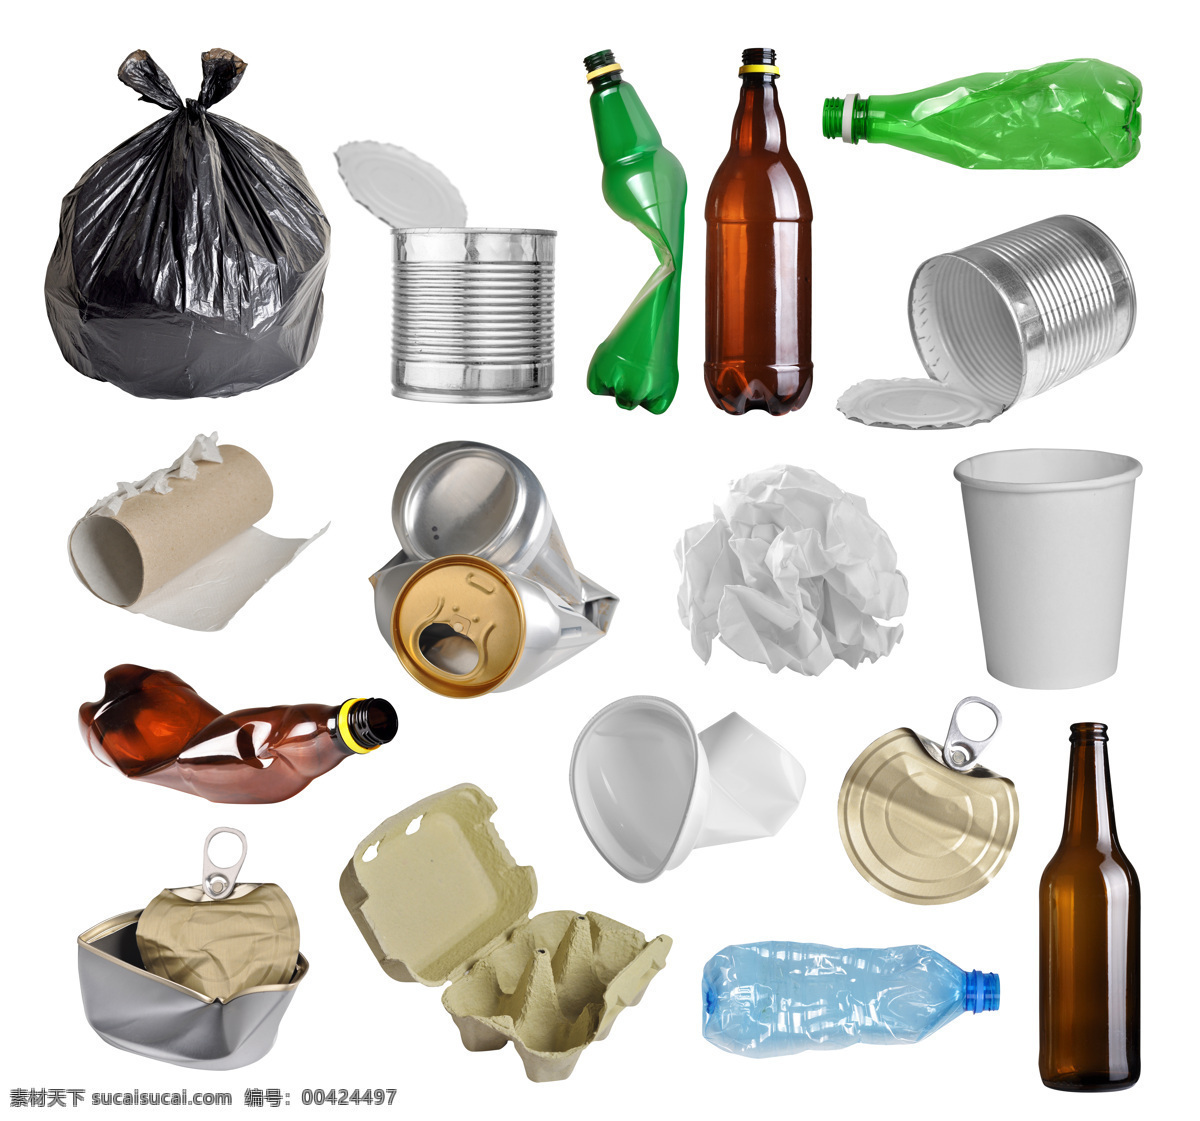 垃圾分类 分类垃圾桶 爱护地球 地球 塑料袋 塑胶袋 垃圾桶 其他垃圾 分类垃圾 生活百科 生活素材